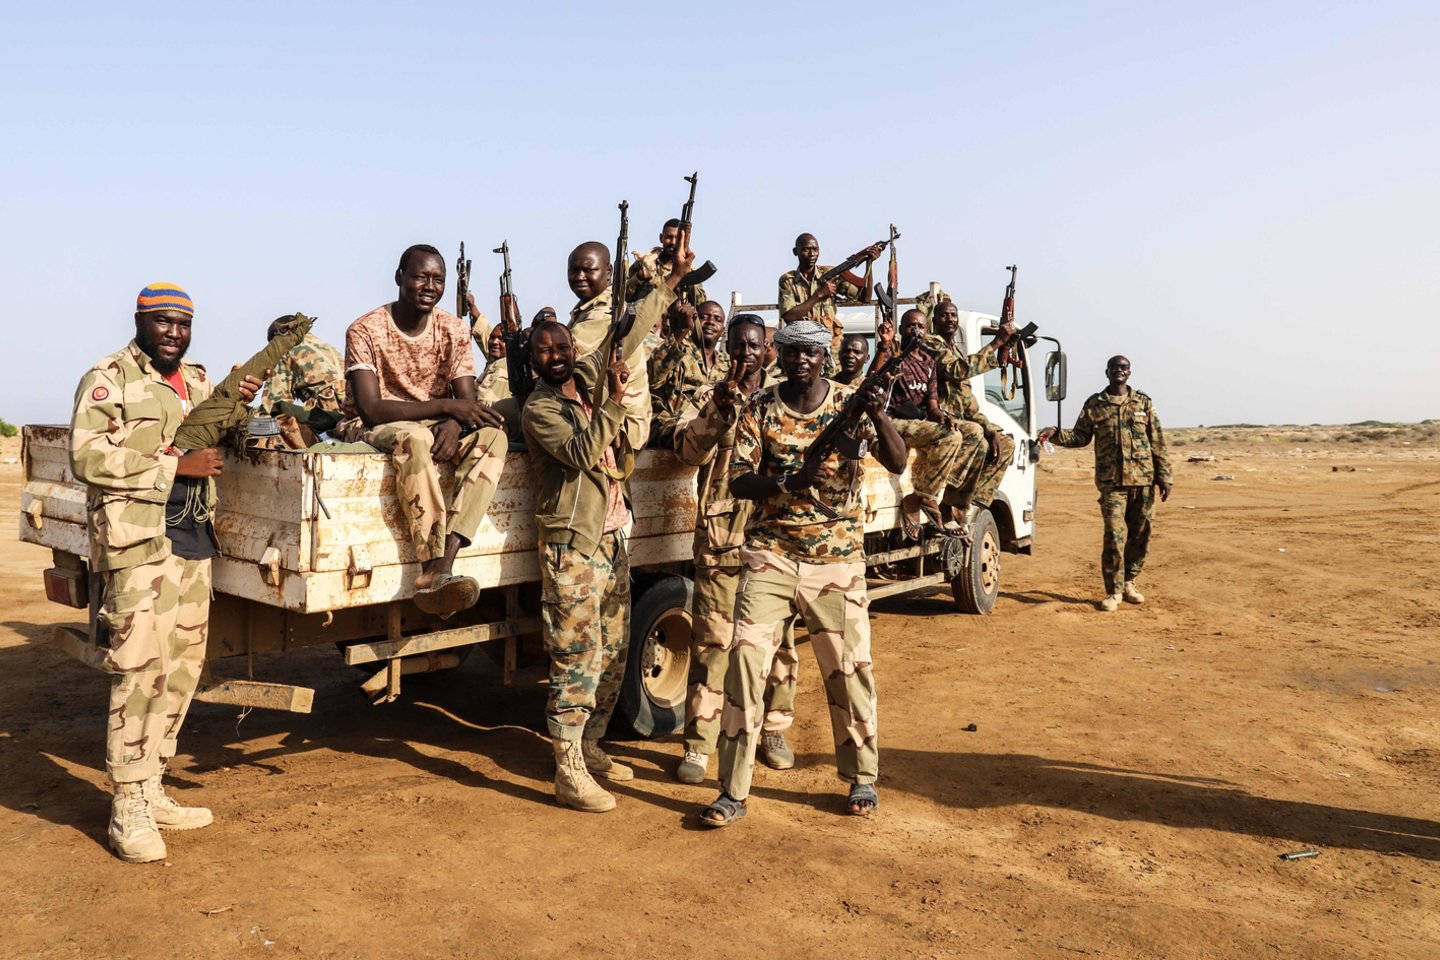  Sudane anksti antradienį buvo sužlugdytas mėginimas įvykdyti perversmą (asociatyvi nuotr.).<br> AFP/Scanpix nuotr.